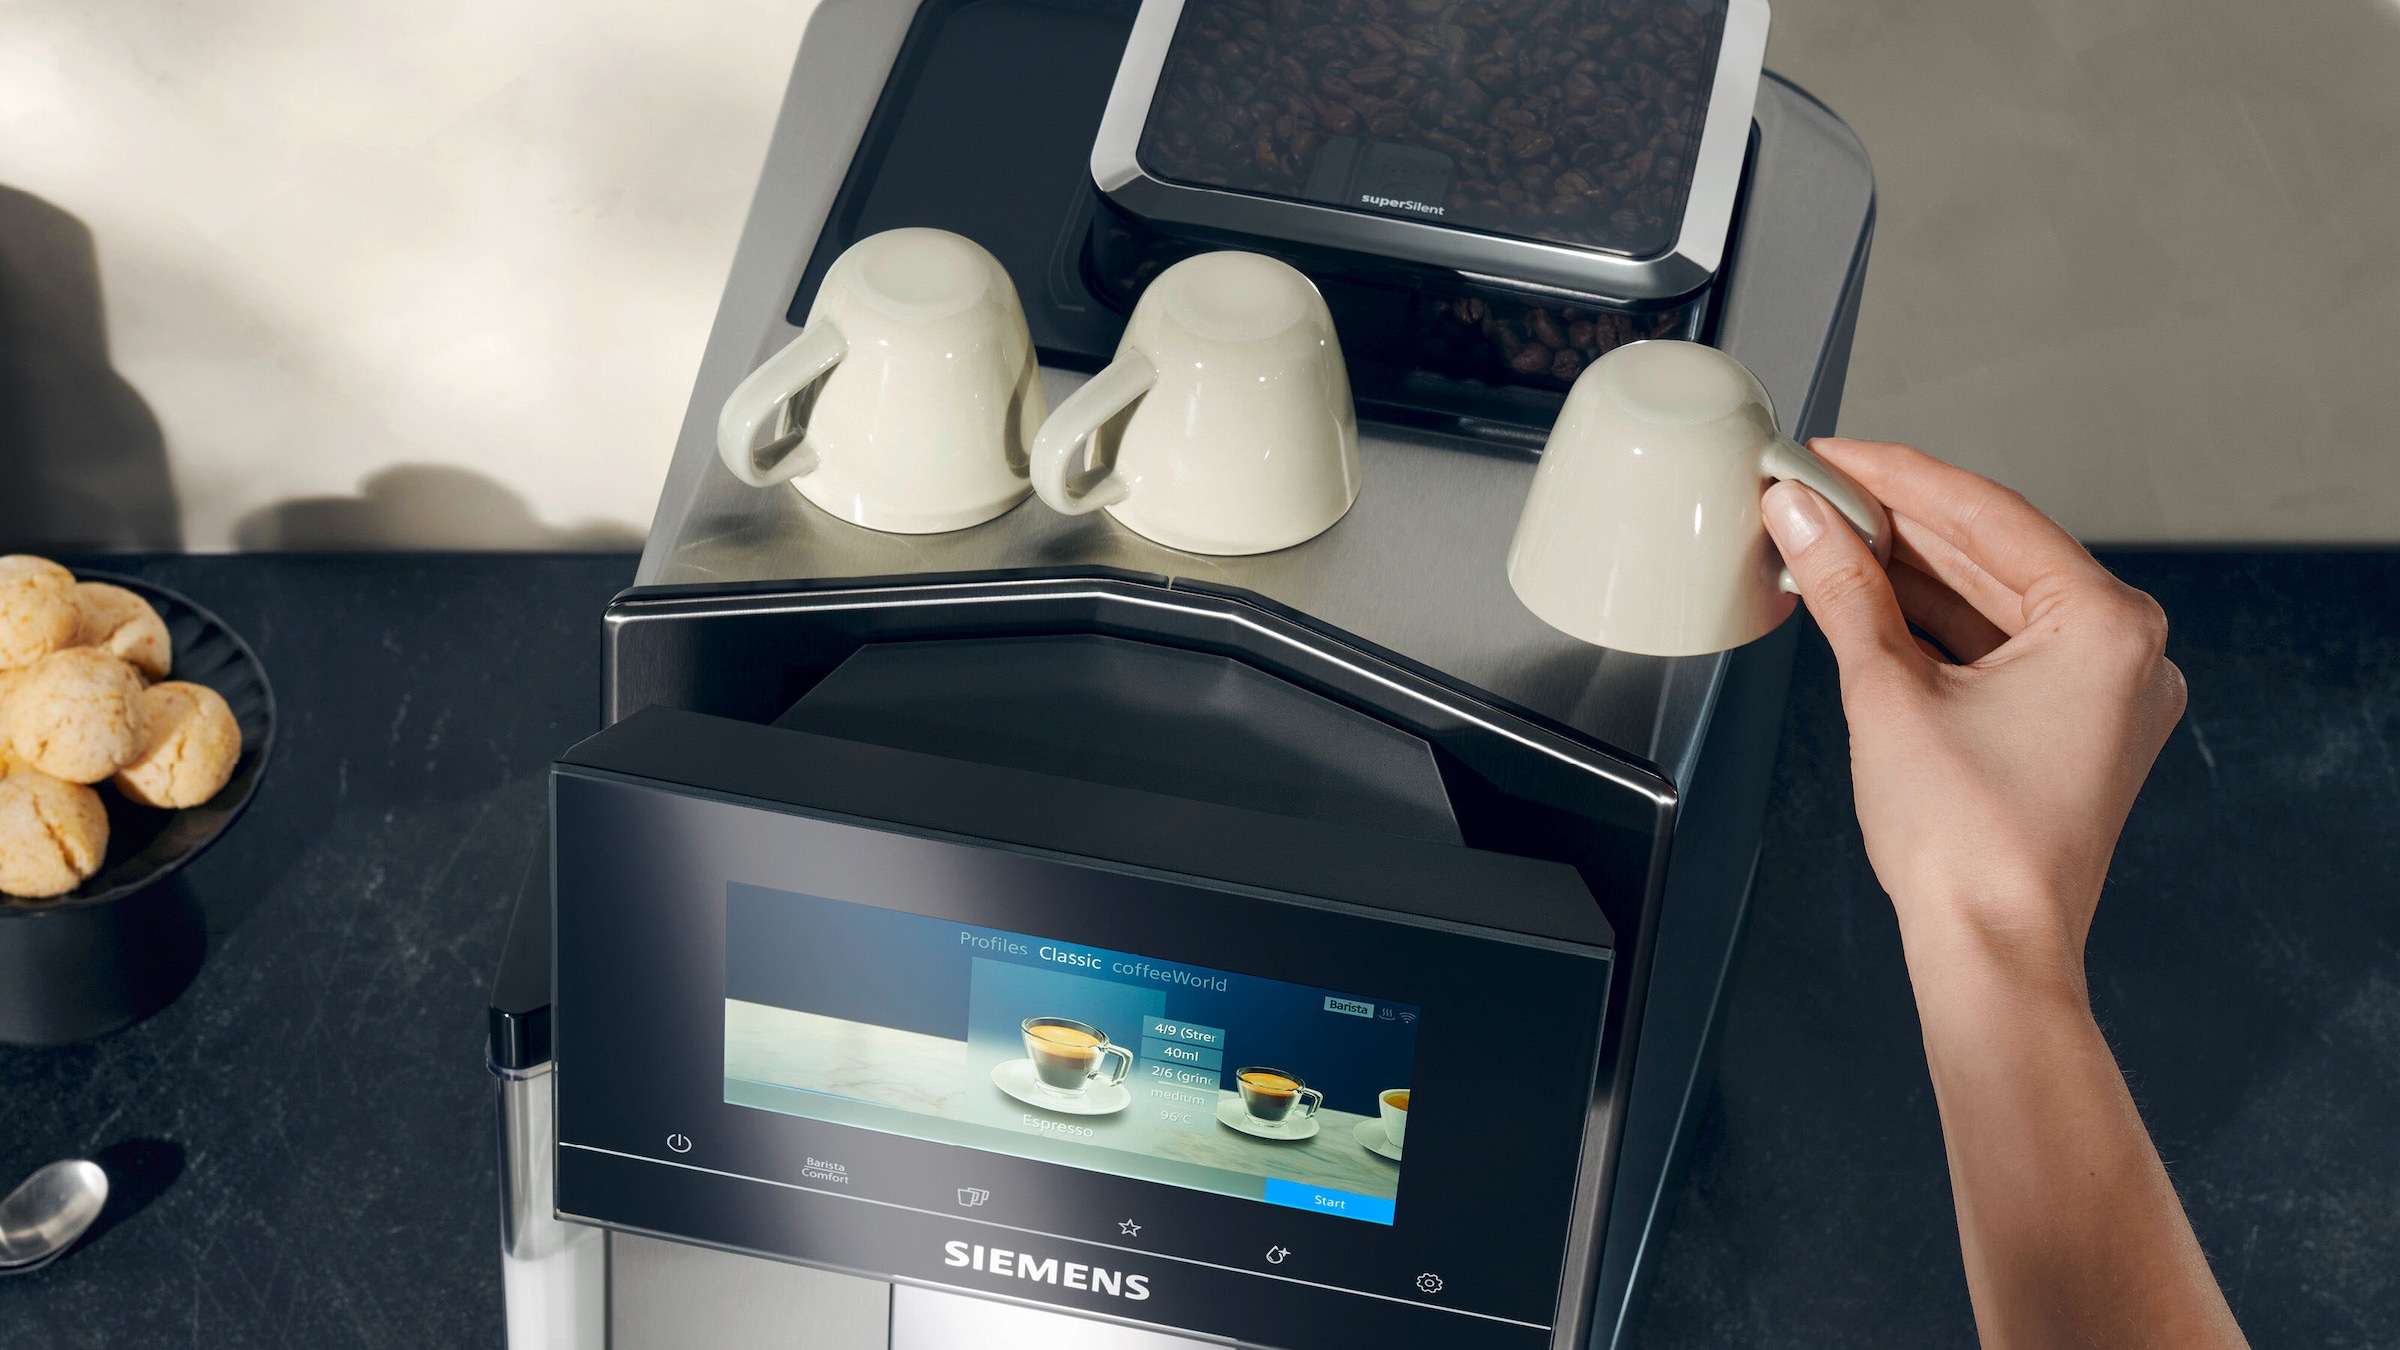 SIEMENS Kaffeevollautomat »EQ900 TQ903D03, intuitives 6,8" TFT-Display, Geräuschreduzierung«, App-Steuerung, Barista-Modus, AromaSelect, 3 Profile, edelstahl